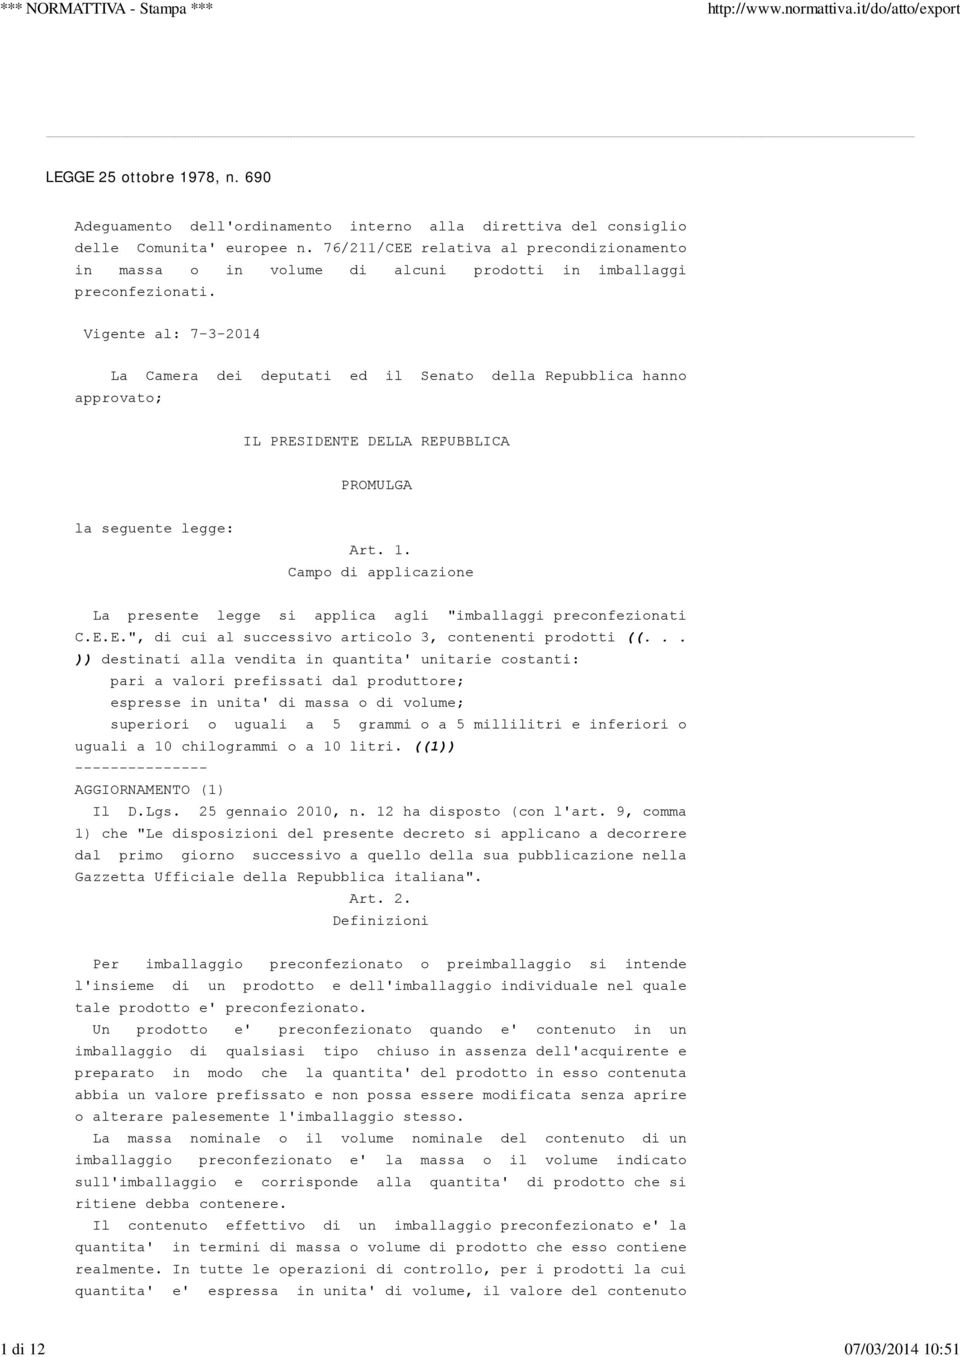 Vigente al: 7-3-2014 La Camera dei deputati ed il Senato della Repubblica hanno approvato; IL PRESIDENTE DELLA REPUBBLICA PROMULGA la seguente legge: Art. 1.